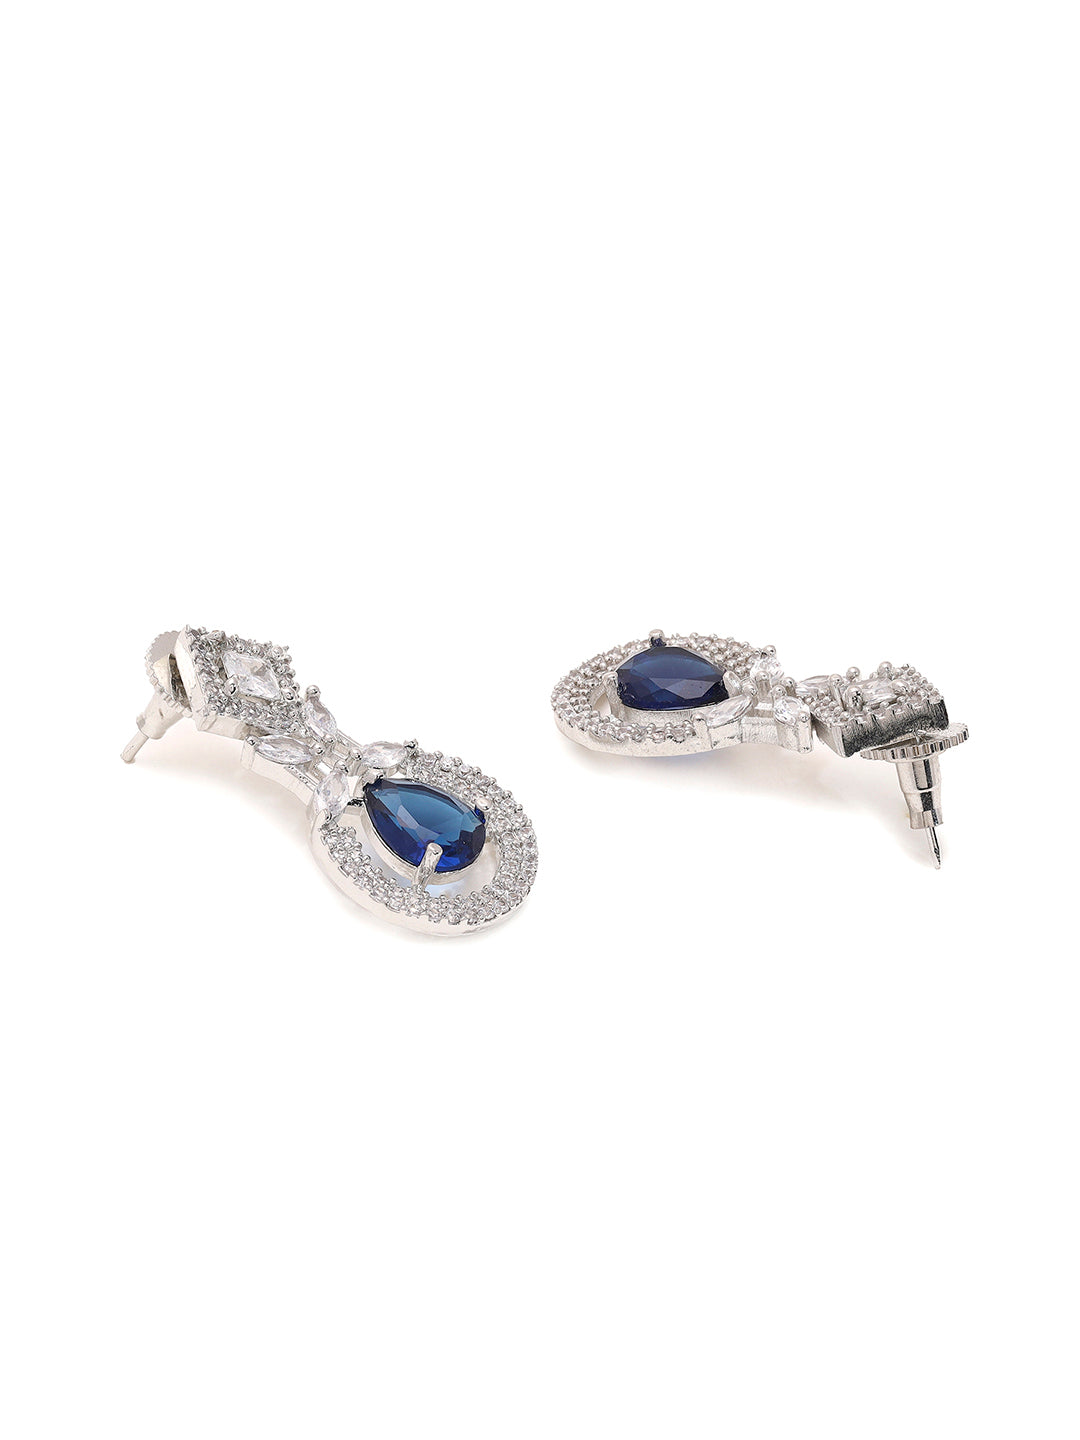 Priyaasi Radiant American Diamond and Blue Stones Jewellery Set